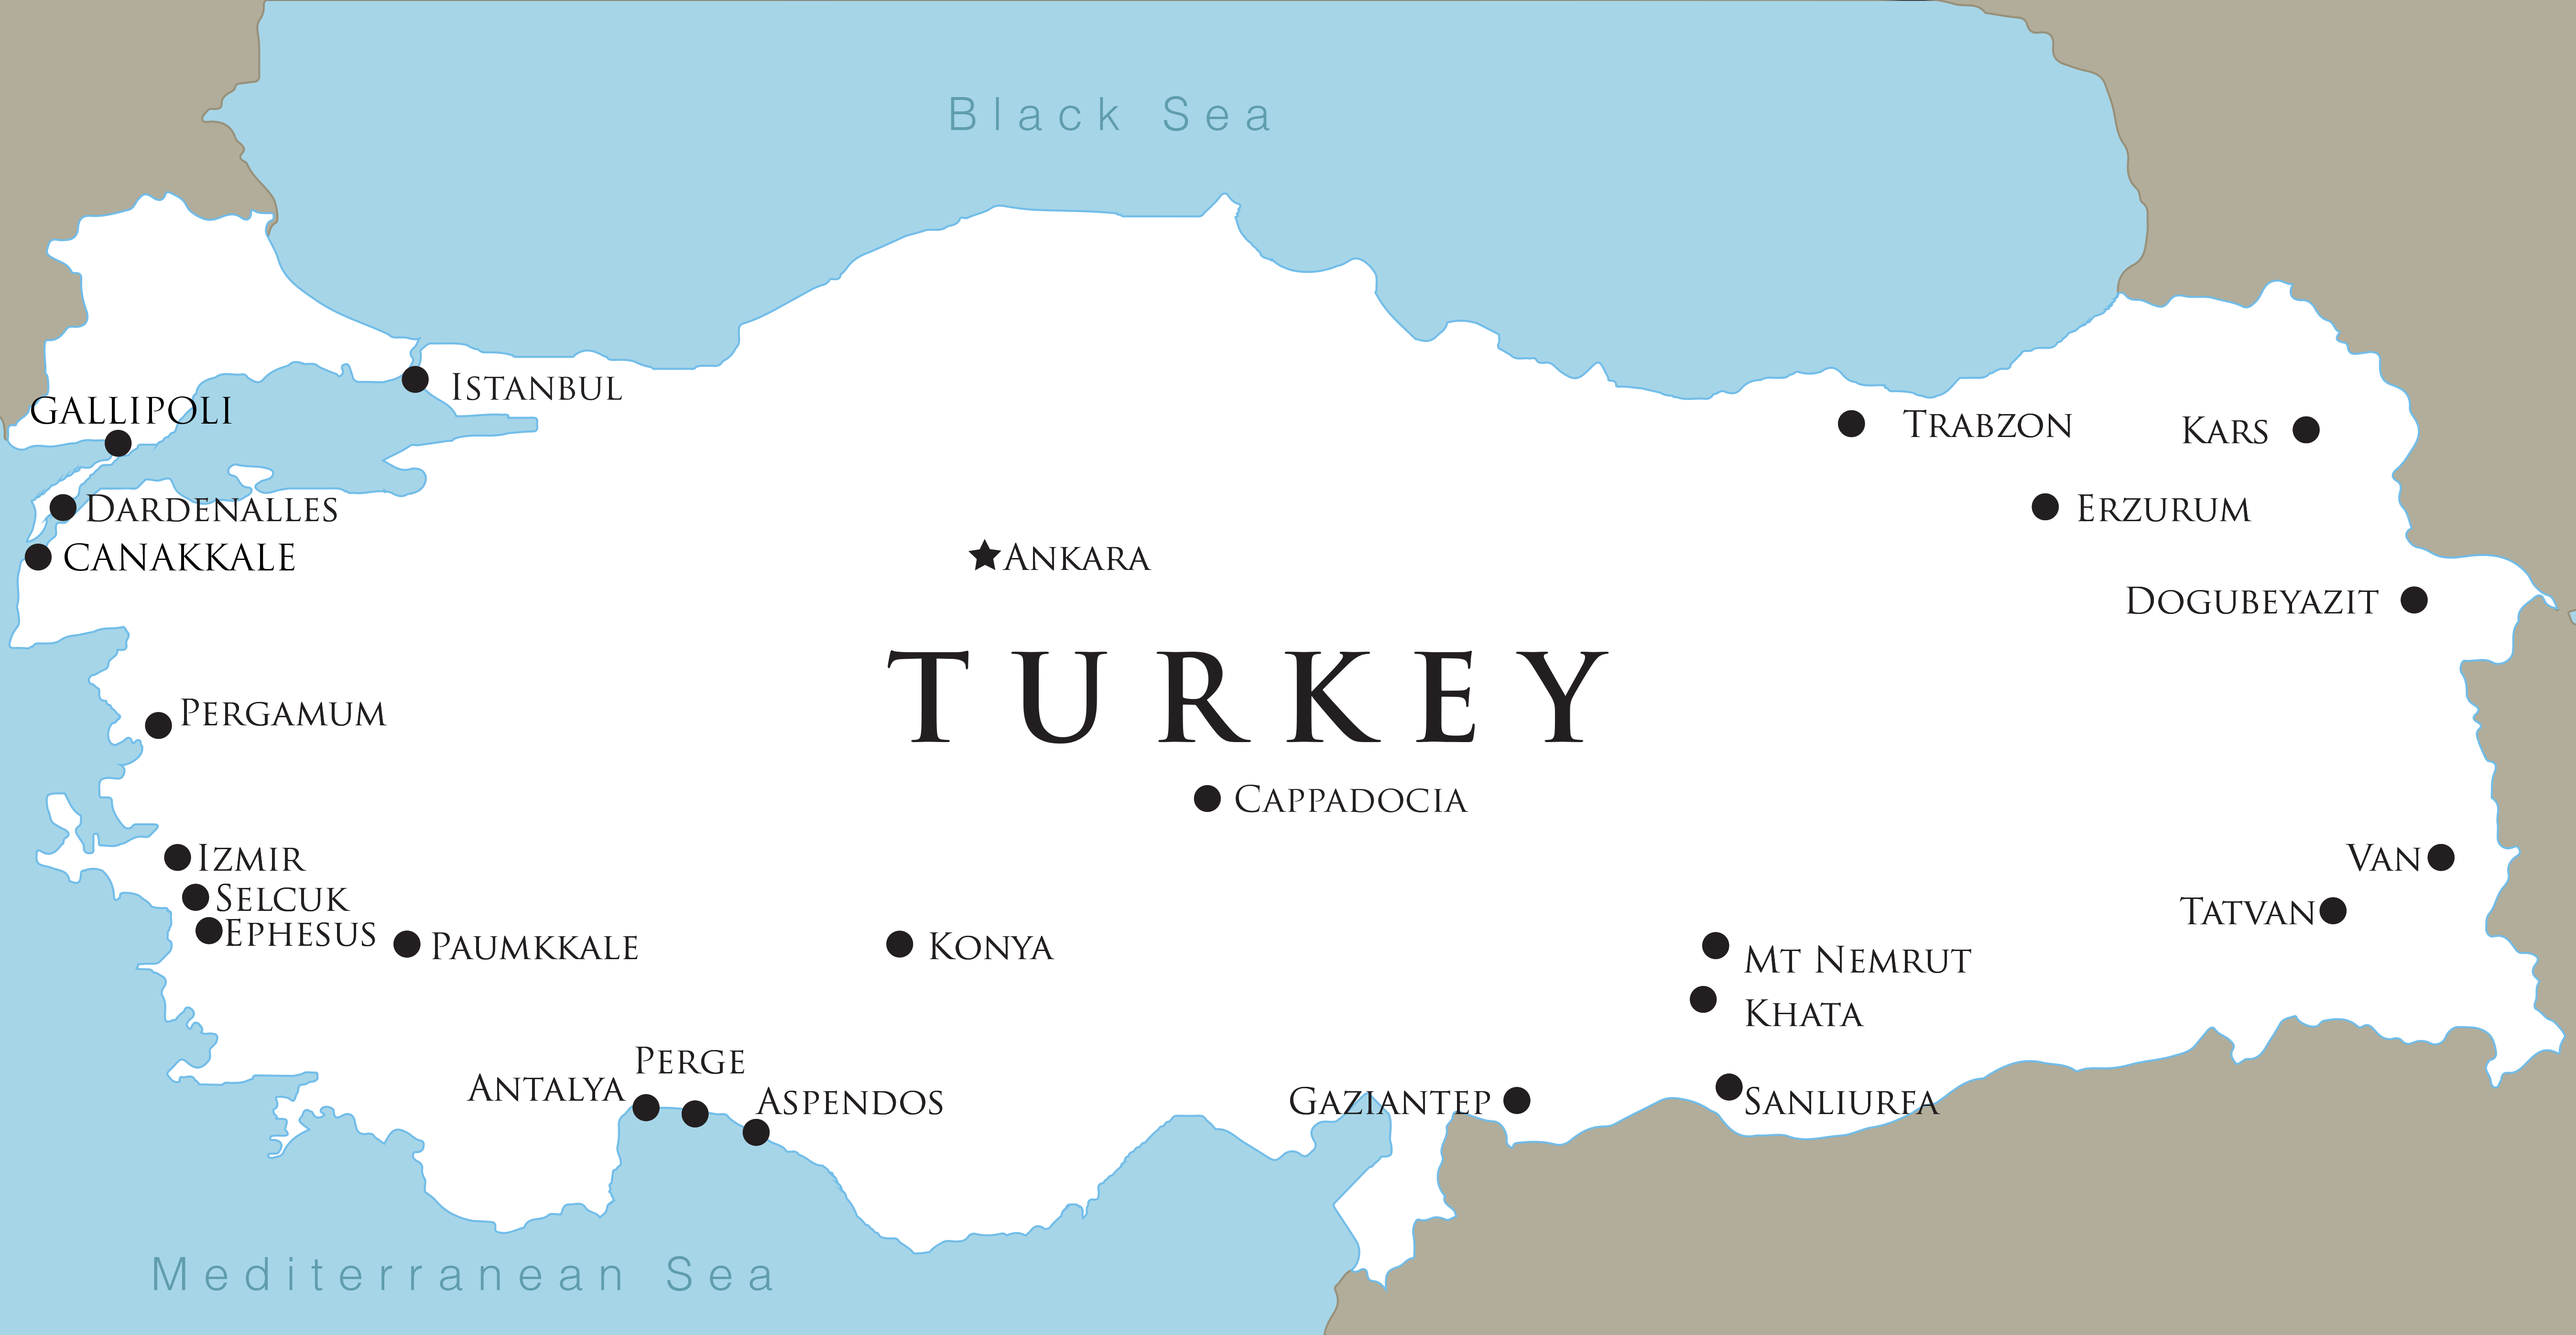 Карта турции с городами на русском. Карта Турции. Стамбул на карте Турции. Границы Турции на карте. Карта Турции и соседних государств.